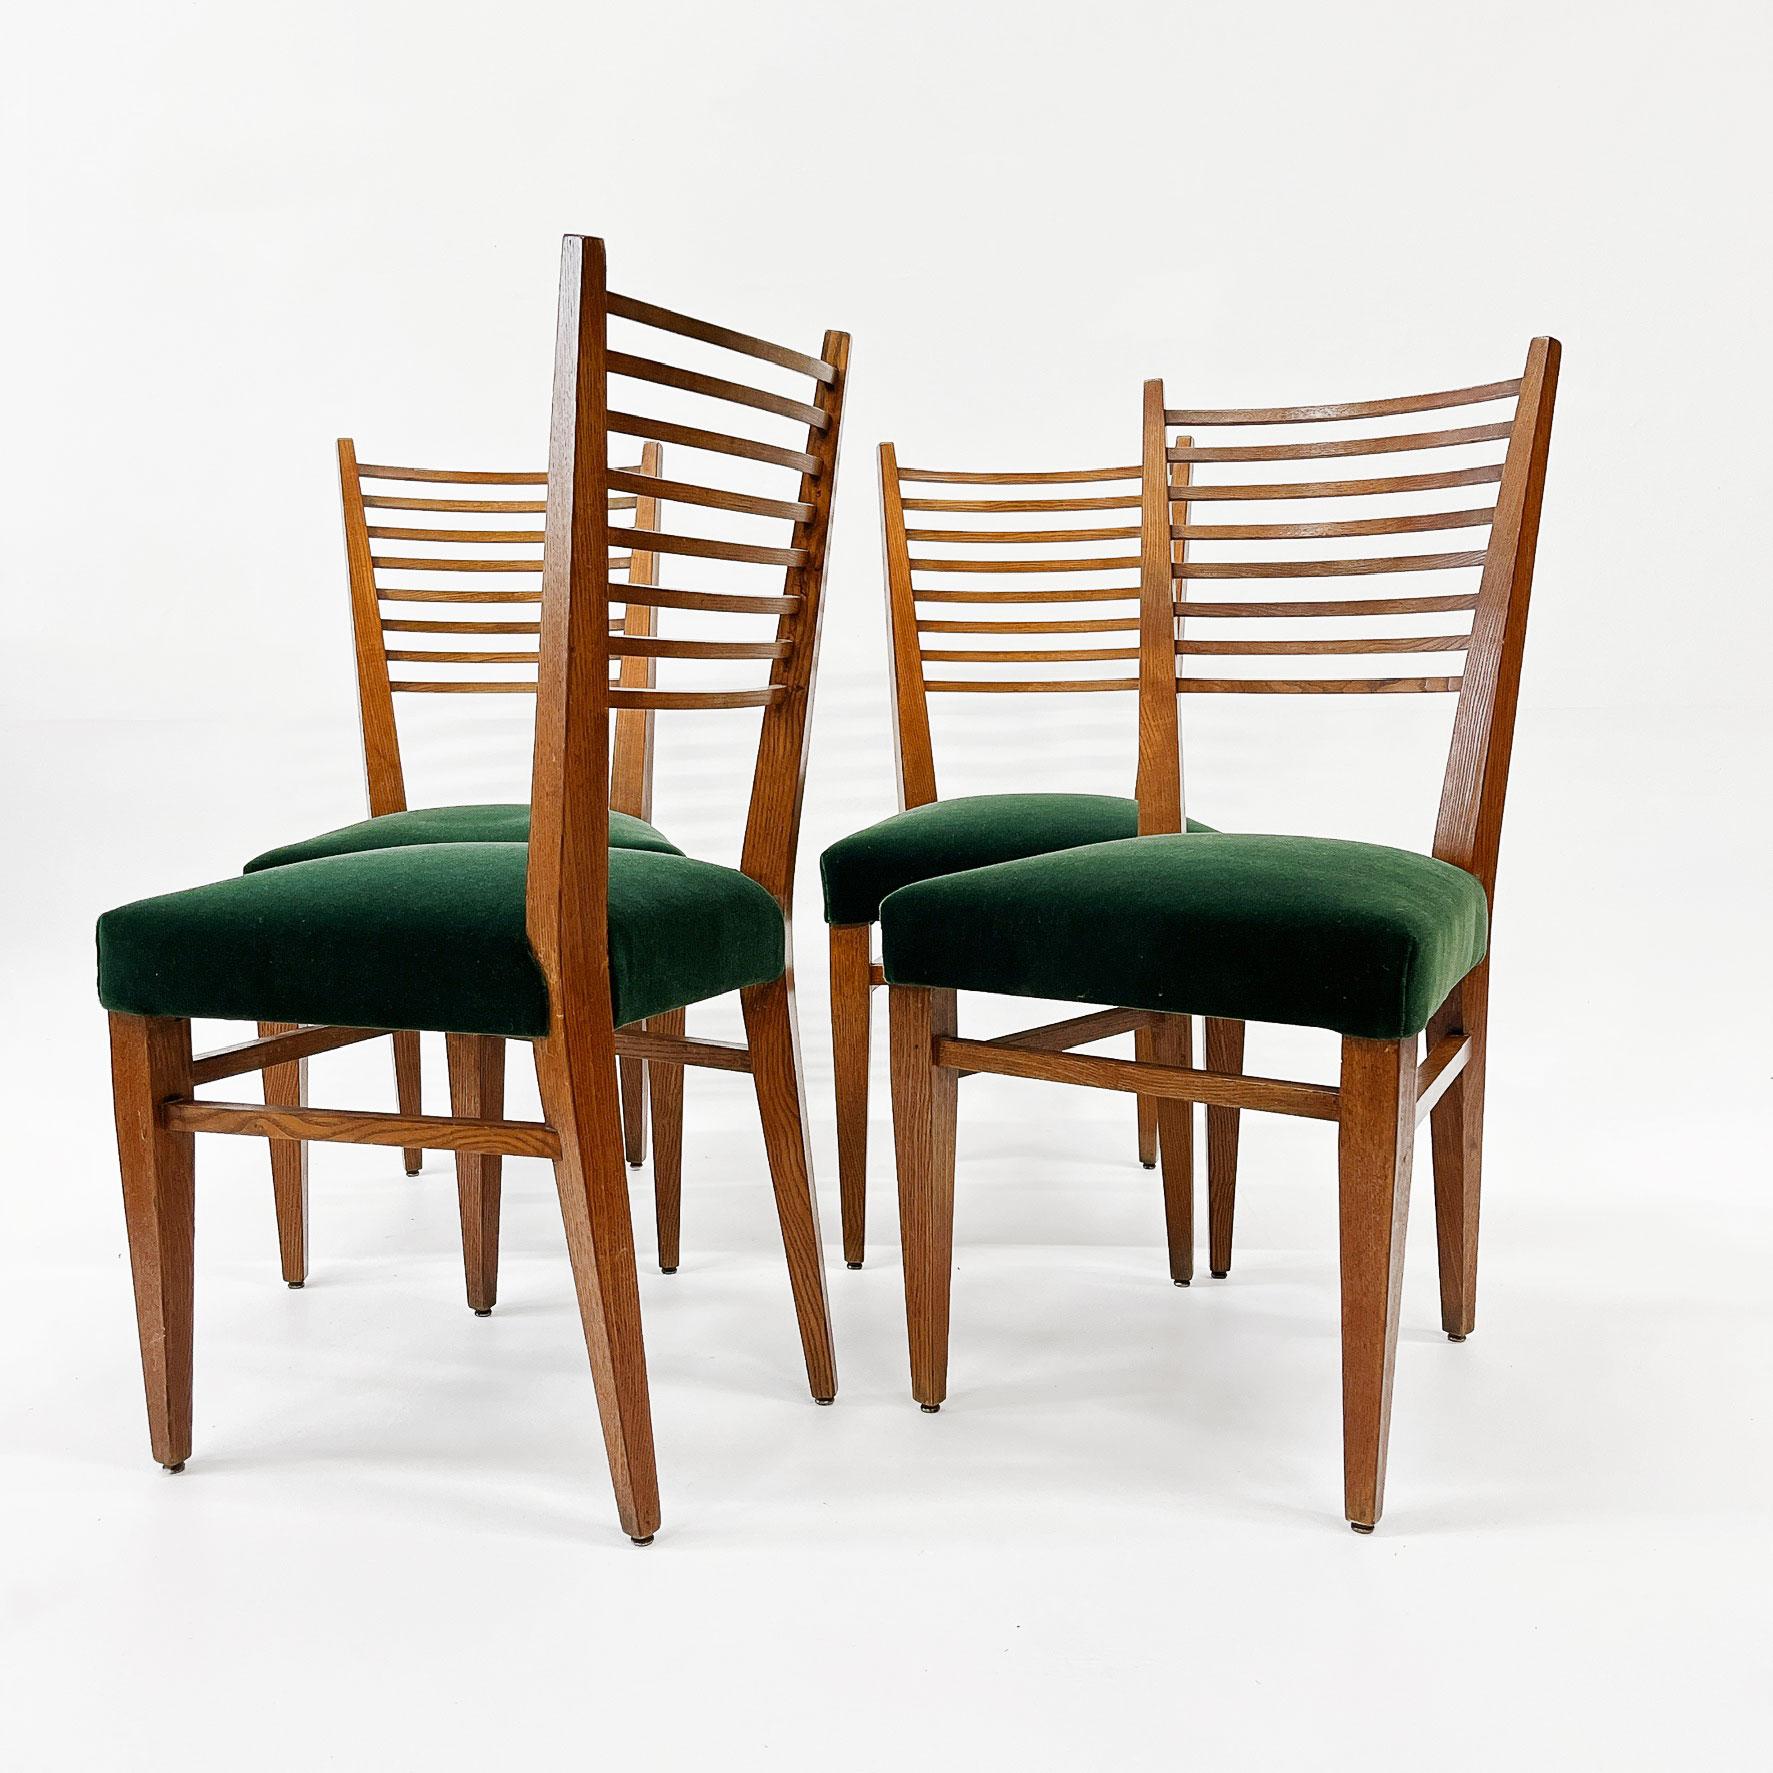 Ensemble de quatre chaises françaises en chêne à dossier en échelle à la manière de Gio Ponti, dont l'assise a été retapissée dans un magnifique Mohair vert émeraude, vers les années 1950.